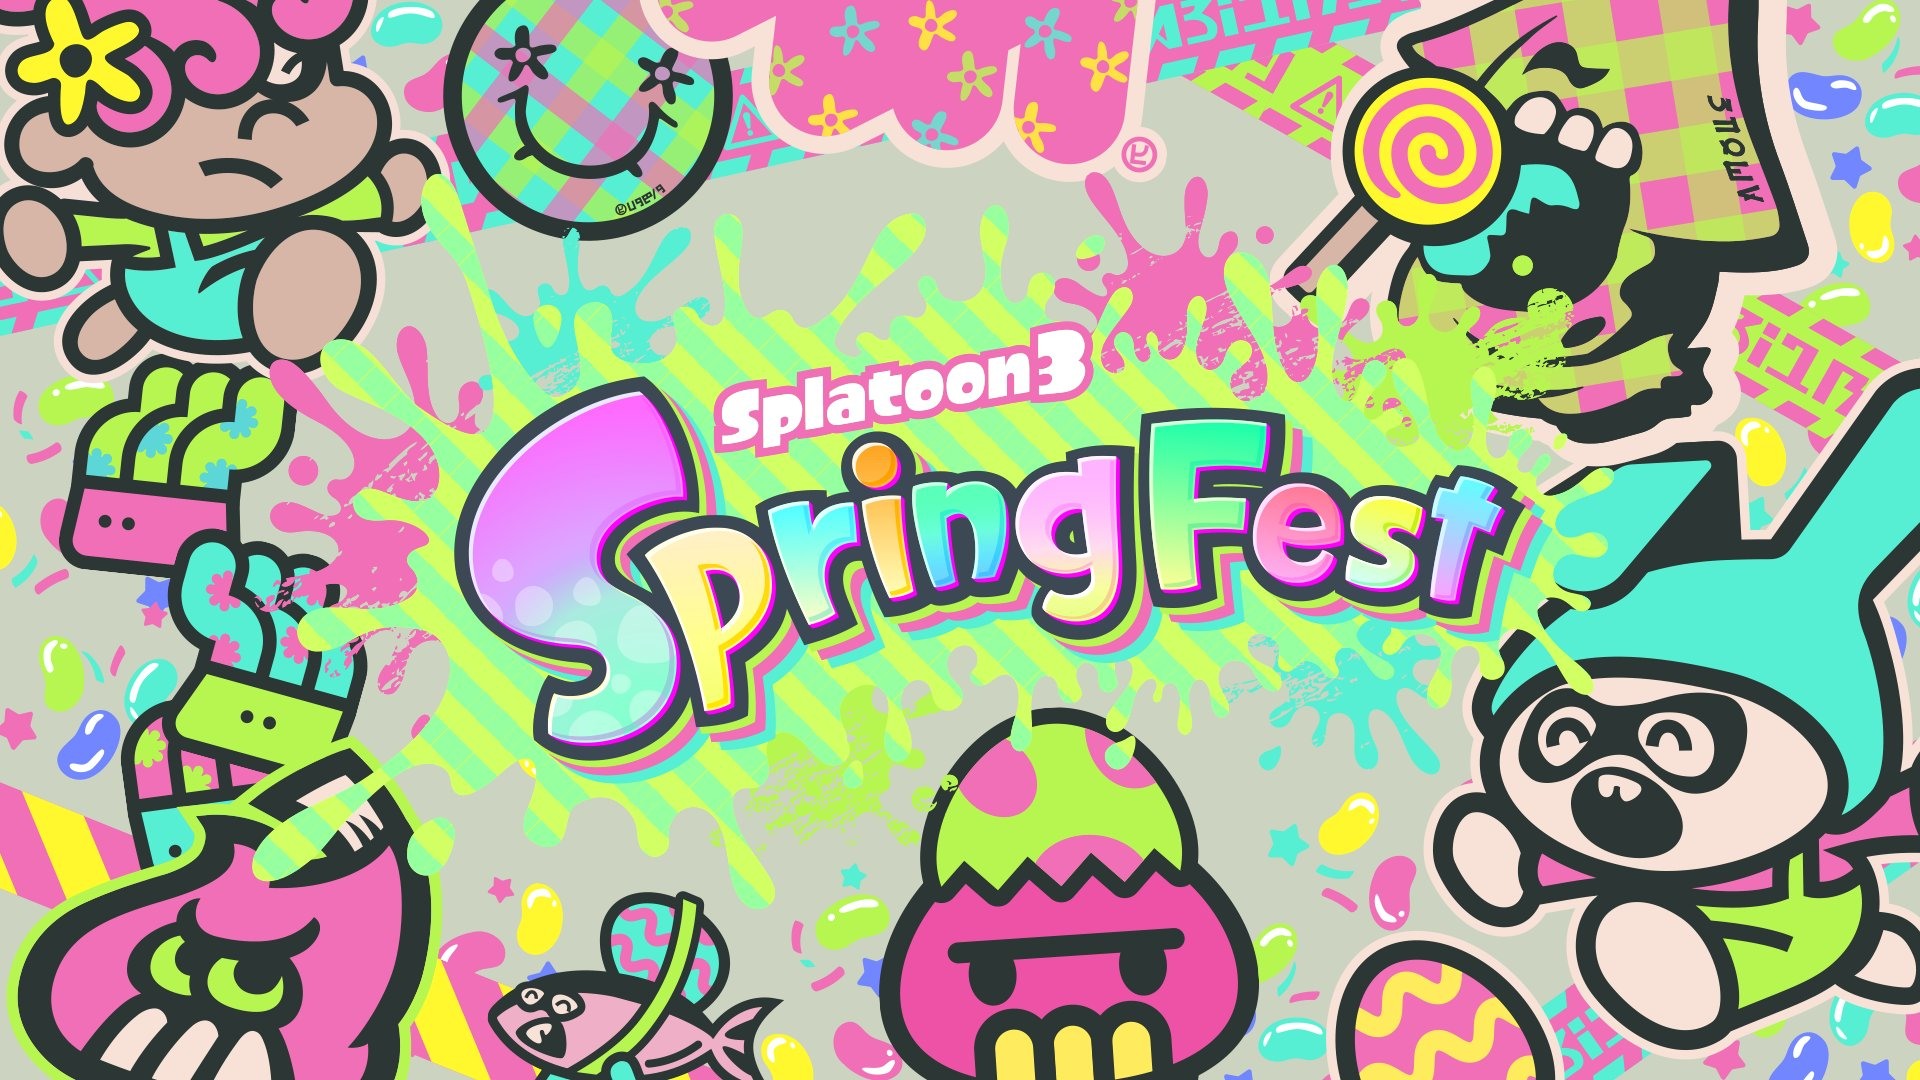 《斯普拉遁 3》将举办春季祭典「SpringFest」并赠送 13 件特别装备